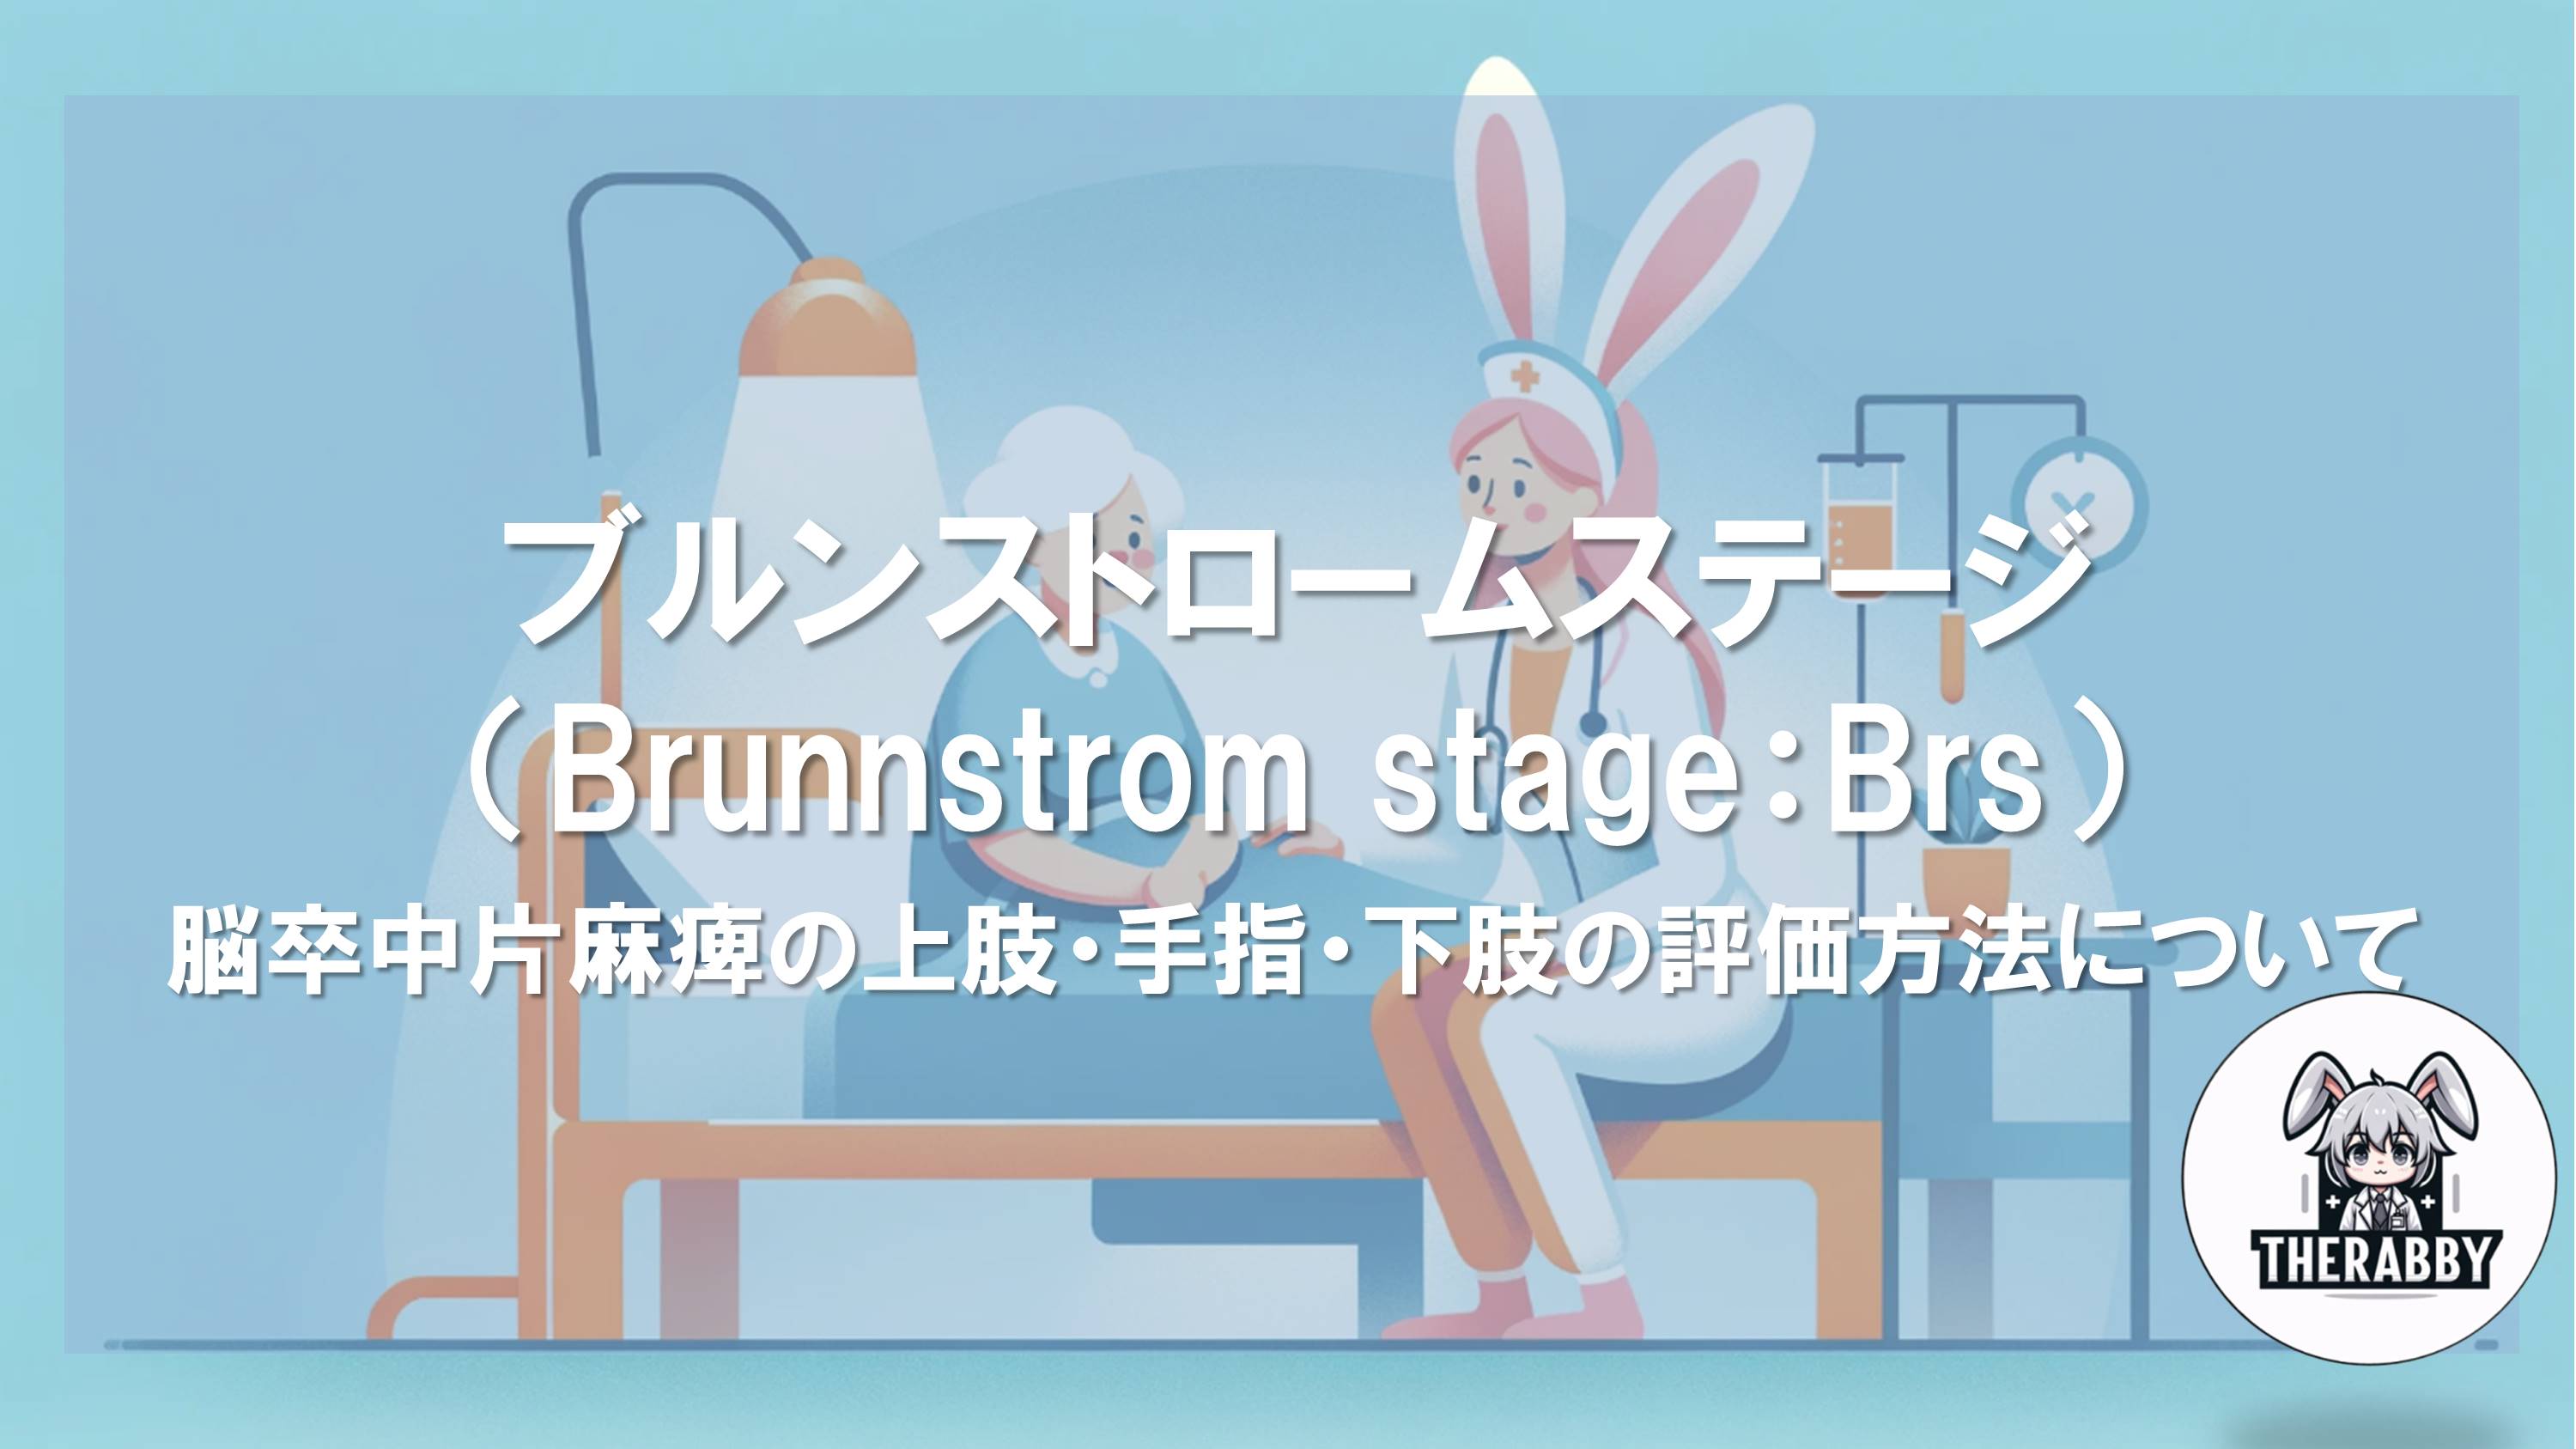 ブルンストロームステージ（Brunnstrom stage：Brs）- 脳卒中片麻痺の上肢・手指・下肢の評価方法について